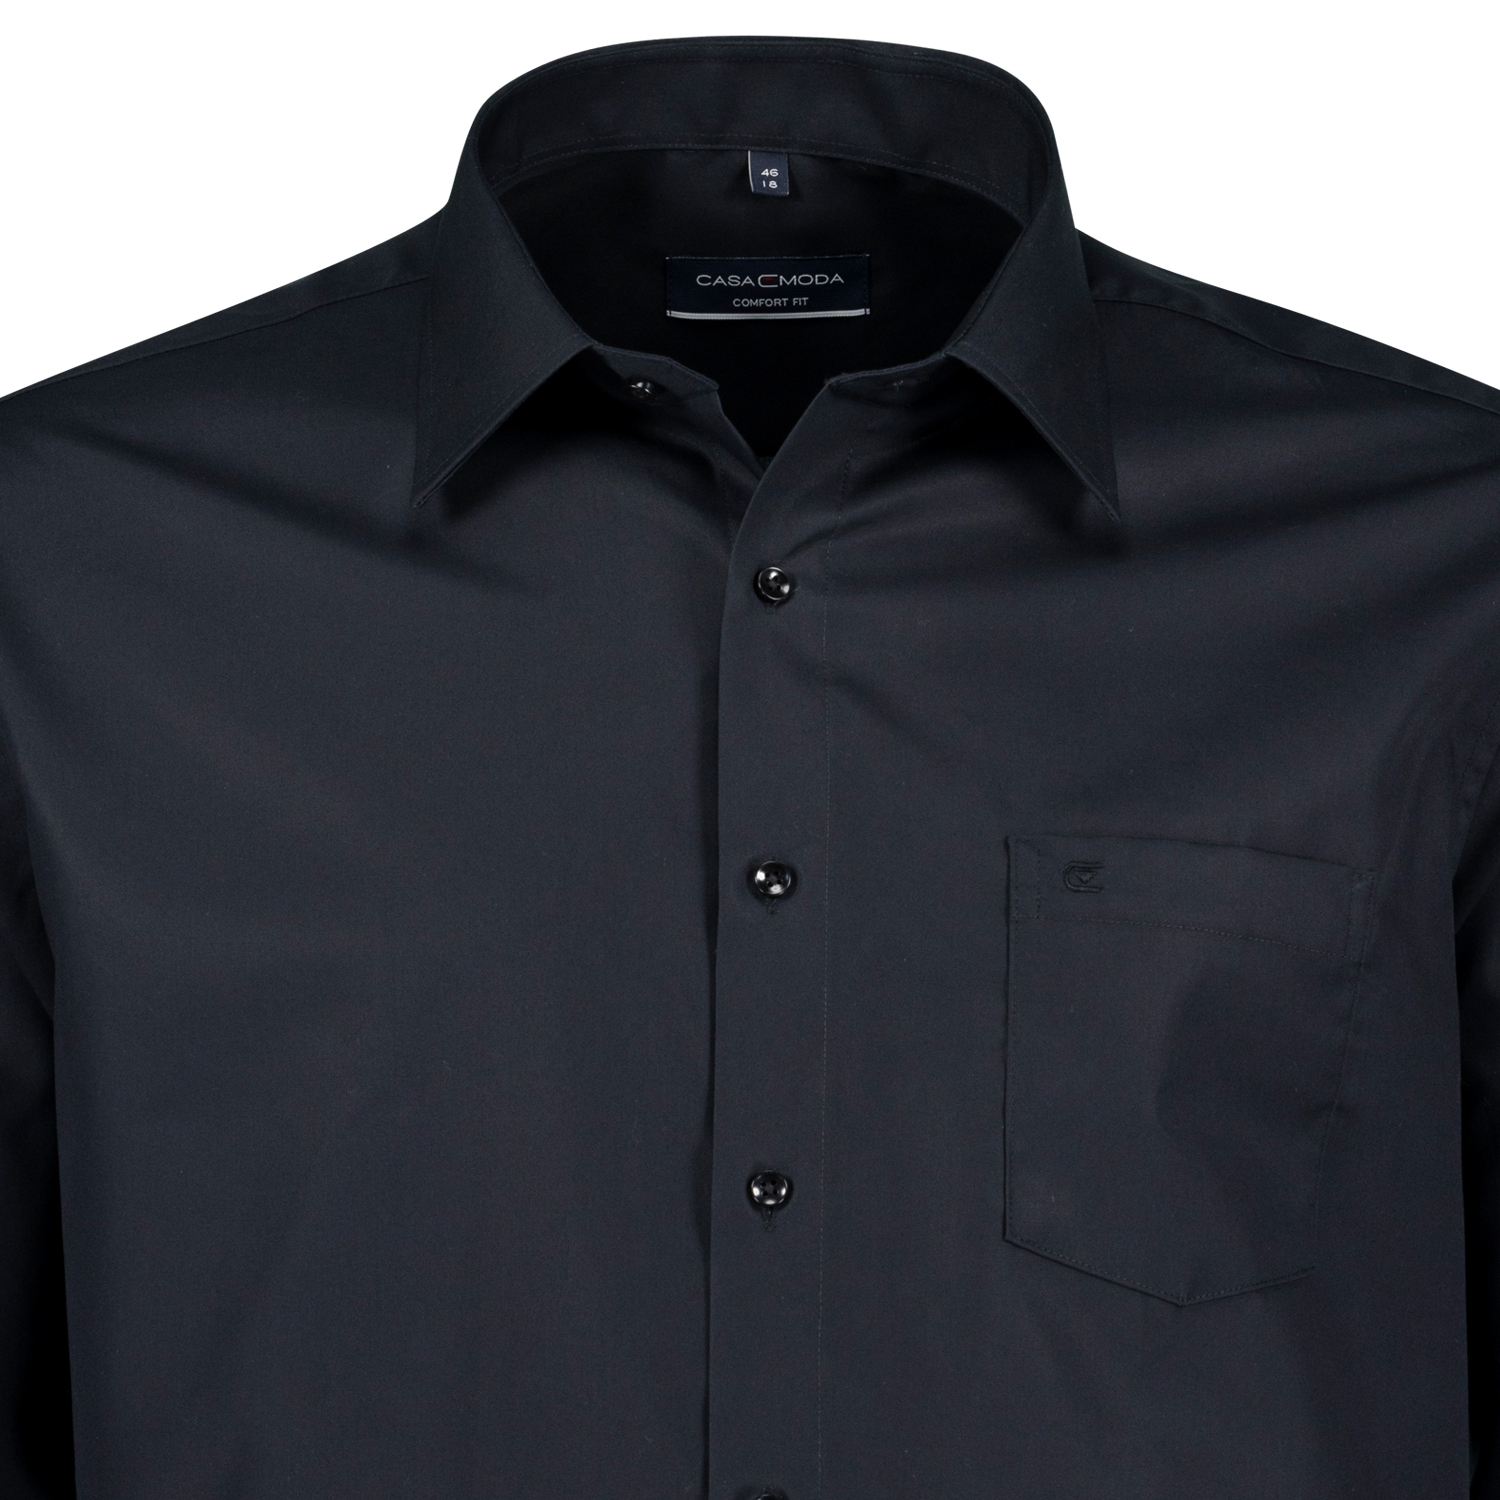 Schwarzes Herren Langarmhemd bügelfrei Comfort Fit von Casamoda in großen Größen 2XL bis 7XL